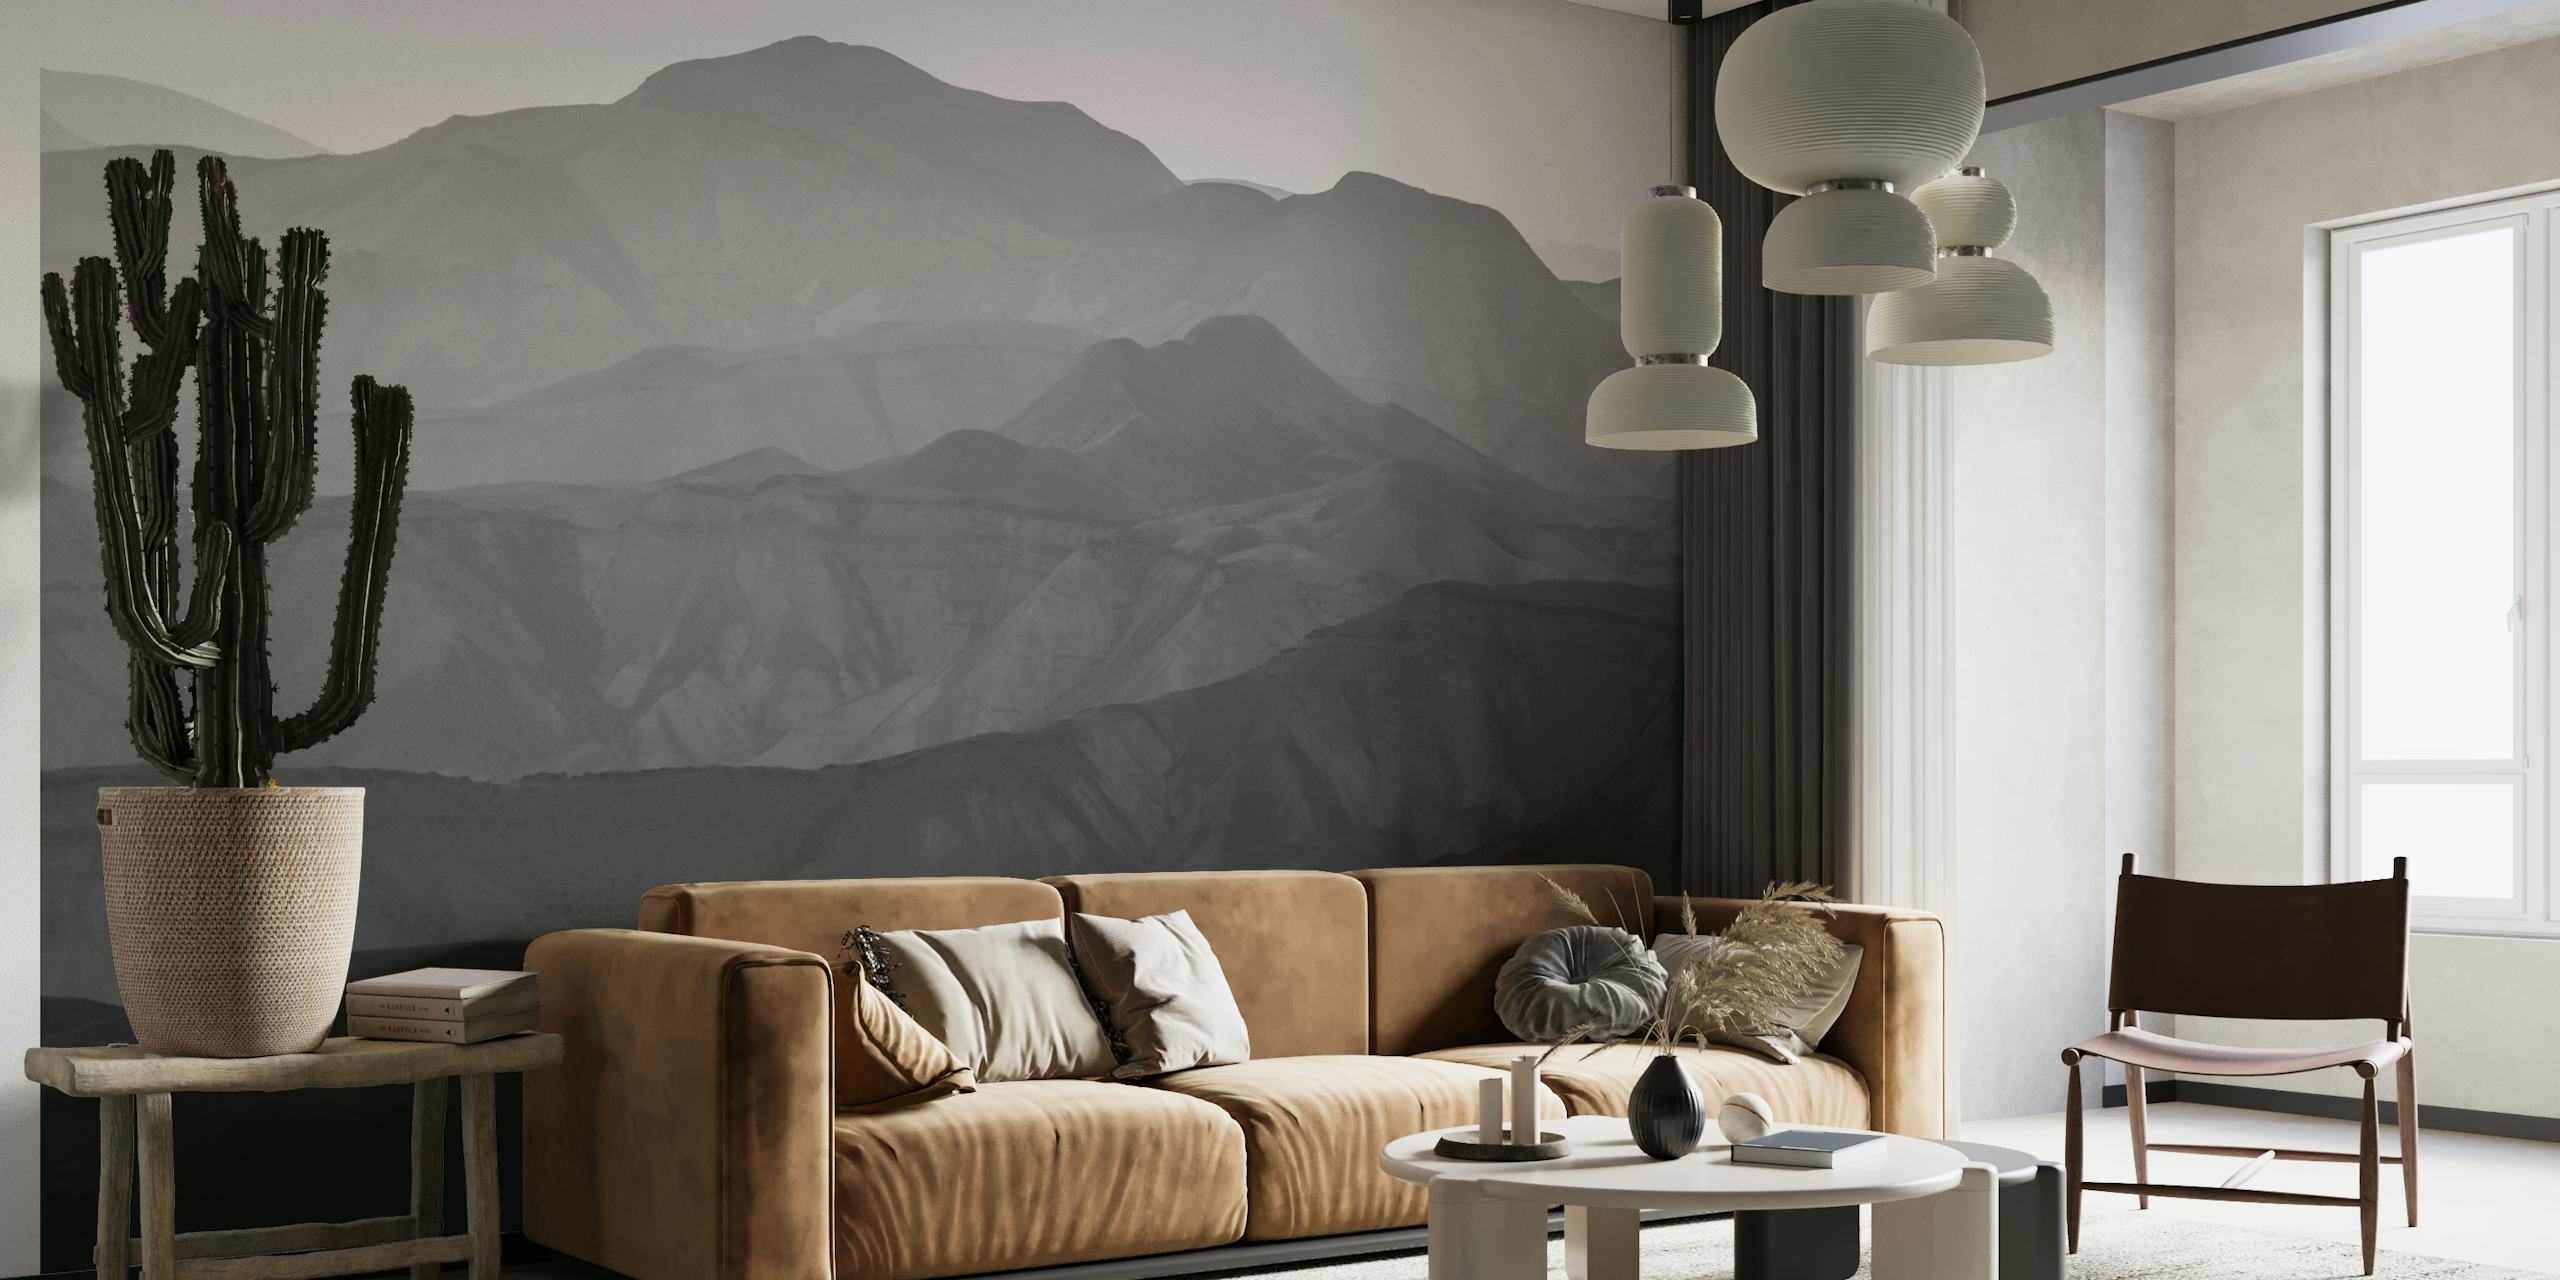 Monochromes Wandgemälde der Berge der Judäischen Wüste, das der Inneneinrichtung Ruhe verleiht